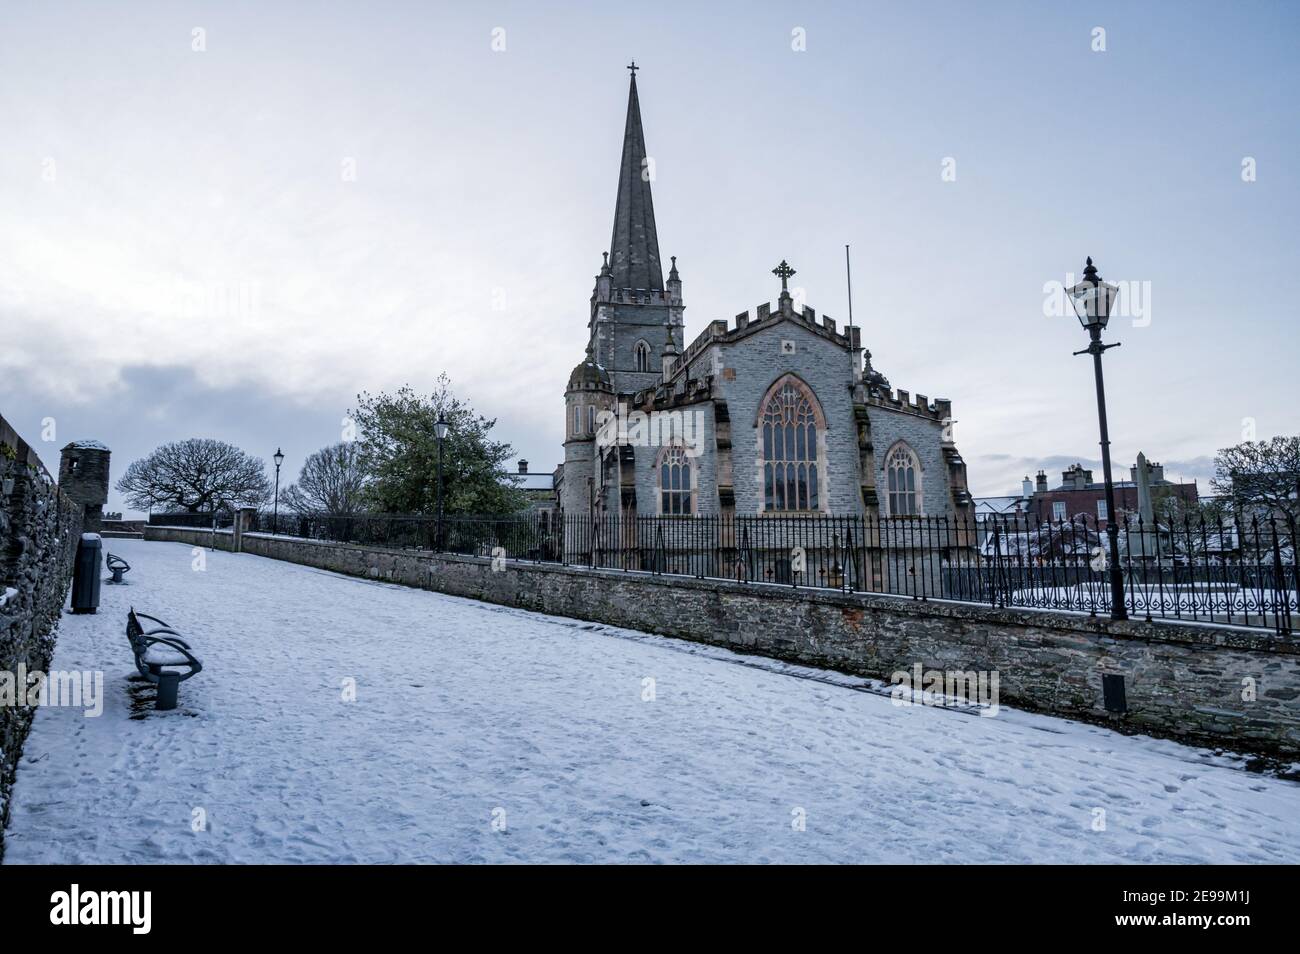 Derry, Norther Irlanda - 23 gennaio 2021: Cattedrale di St Columb nelle Mura di Derry in inverno coperta di neve Foto Stock